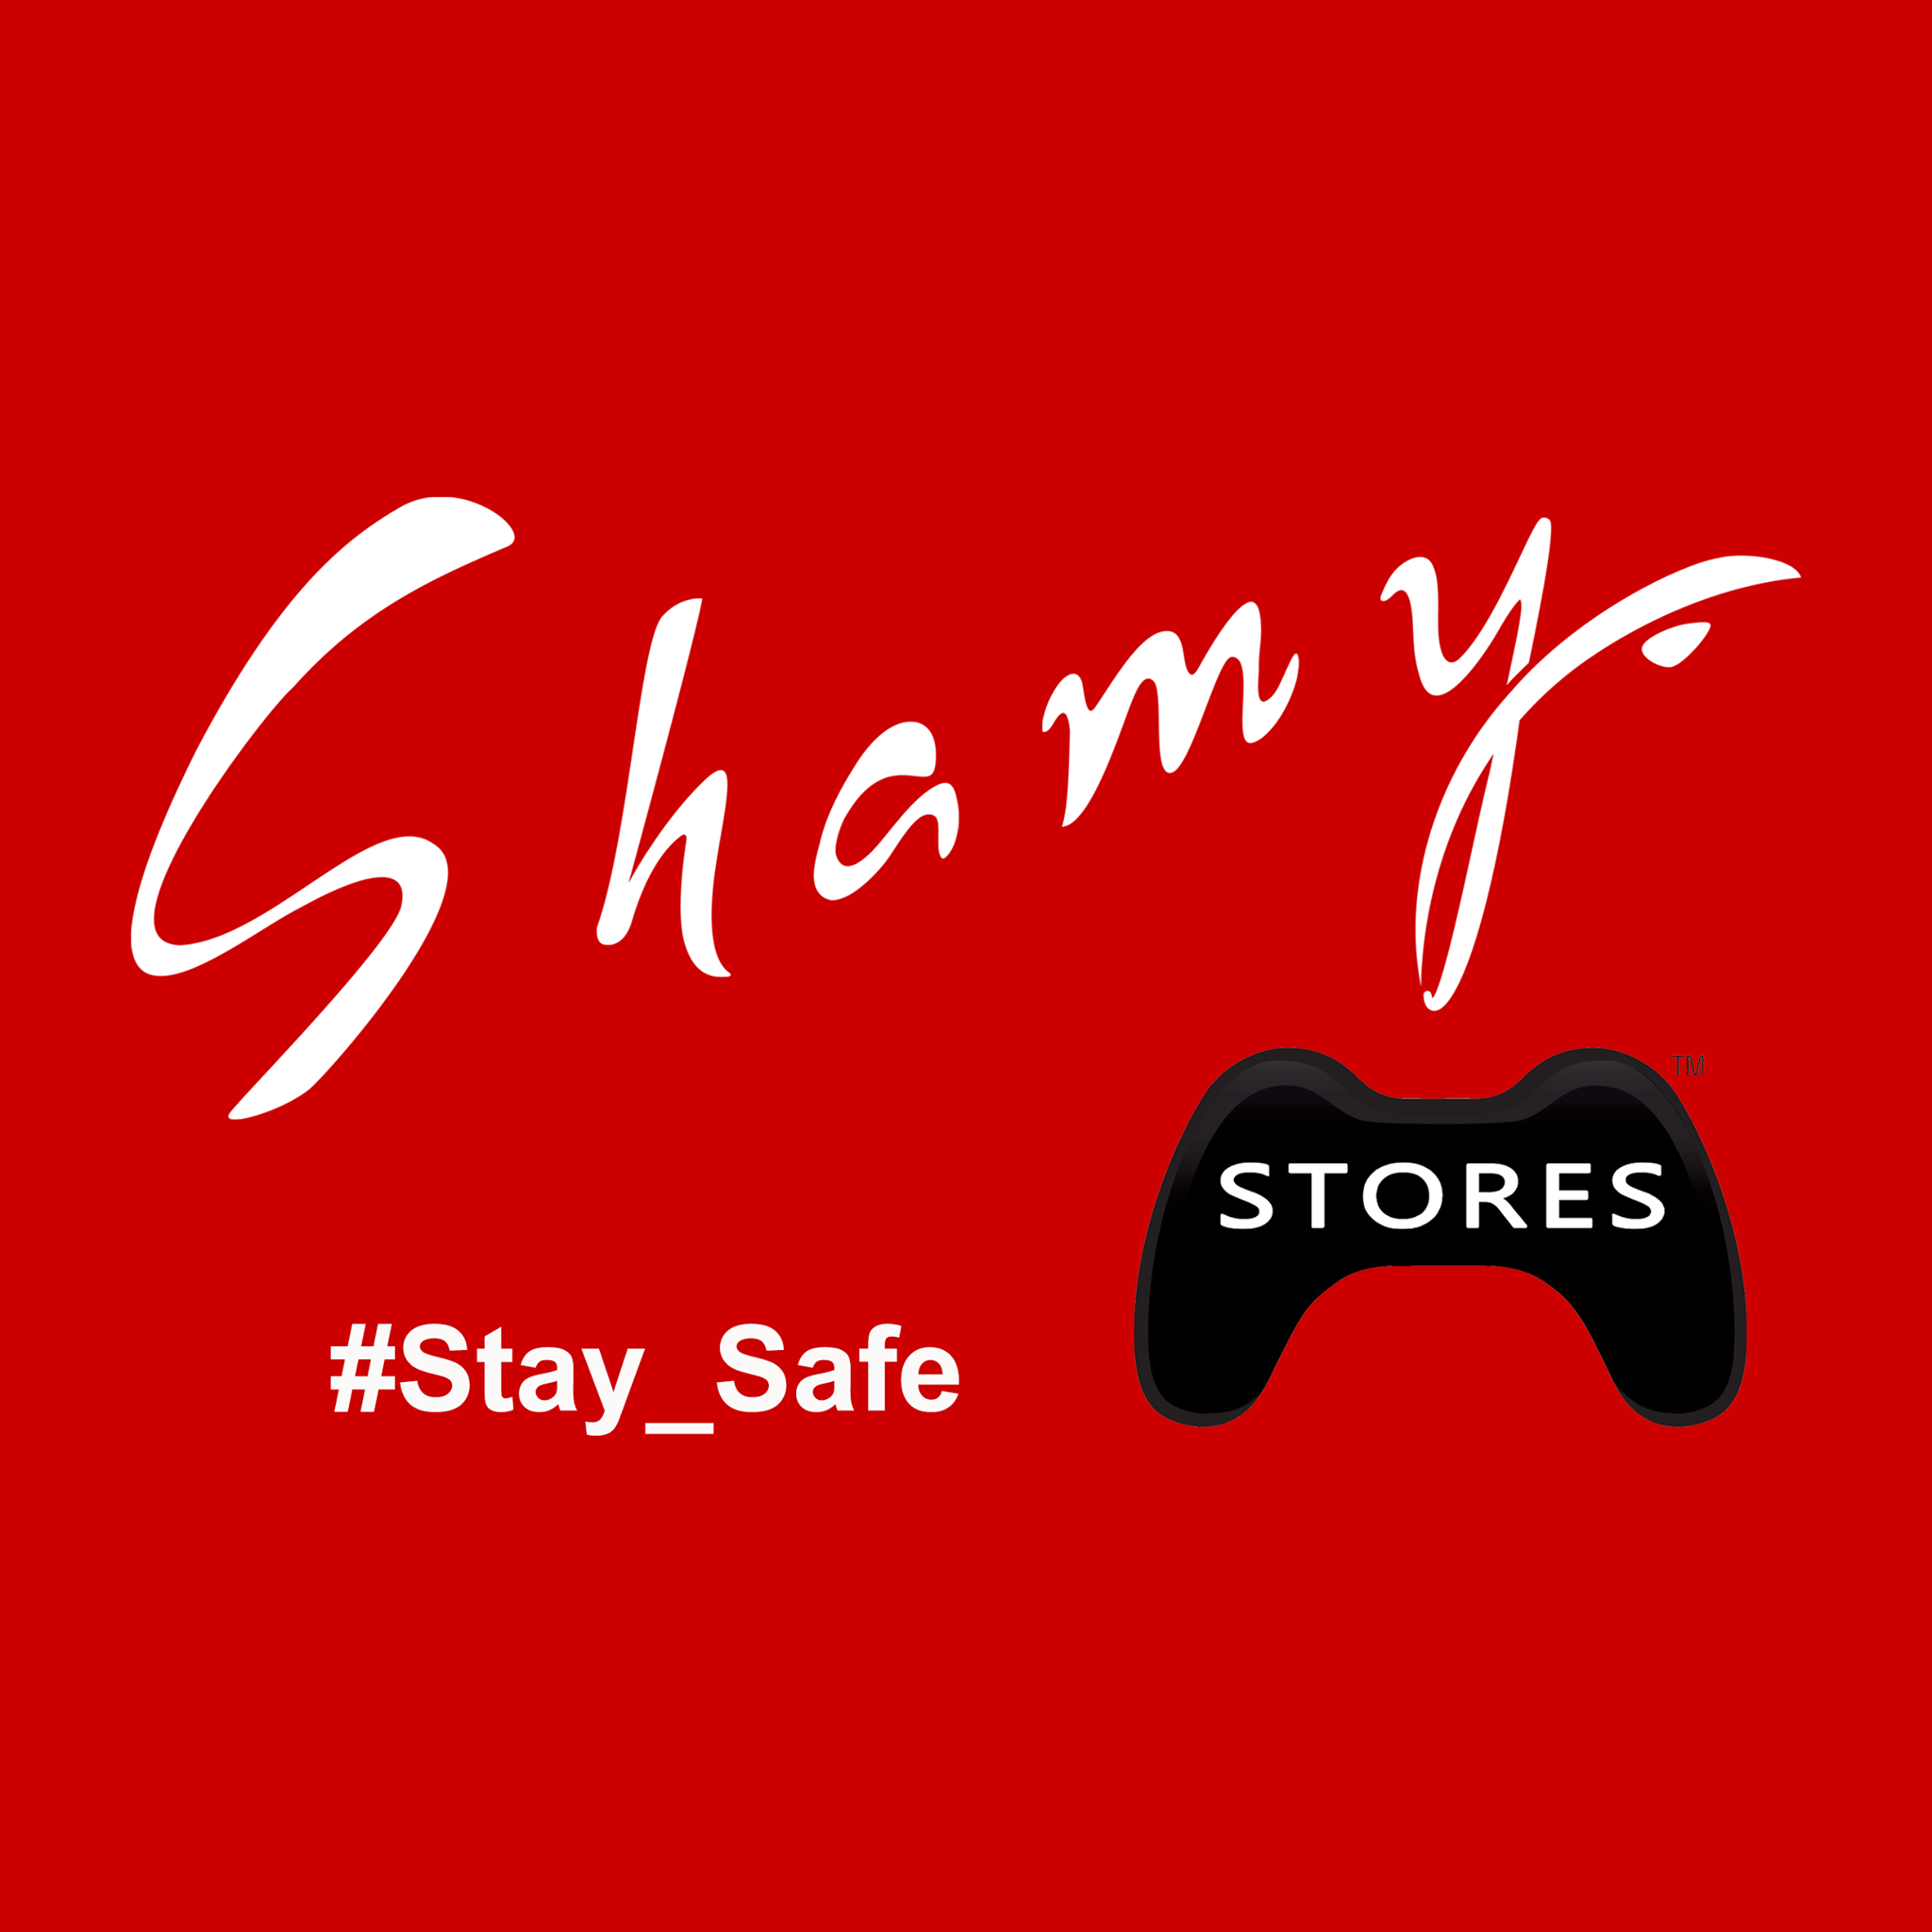 Shamy Stores